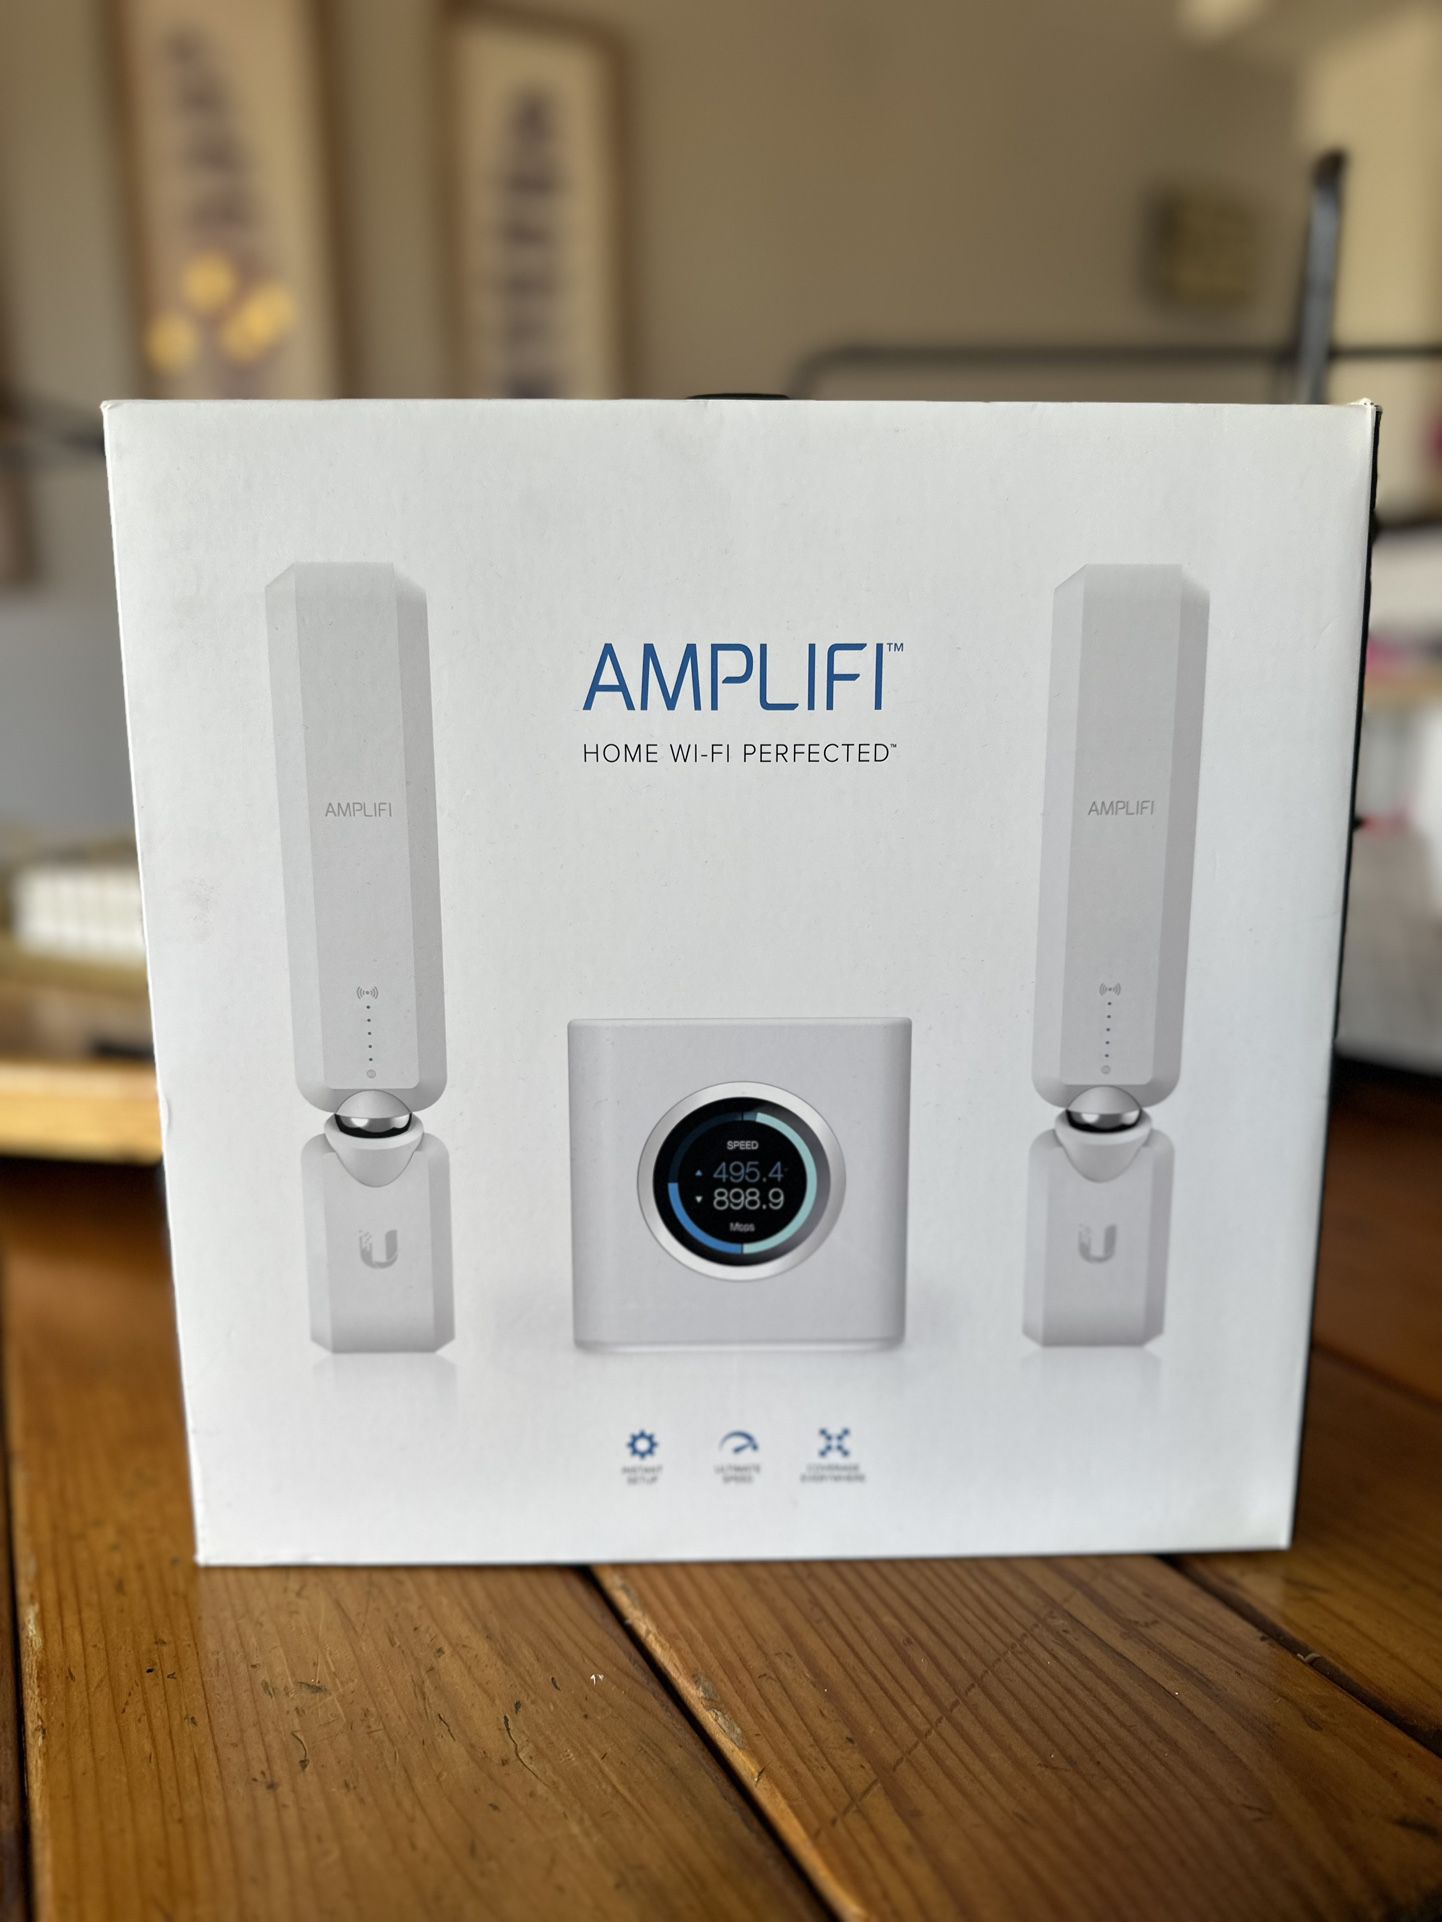 AMPLIFI HD WiFi Mesh Router